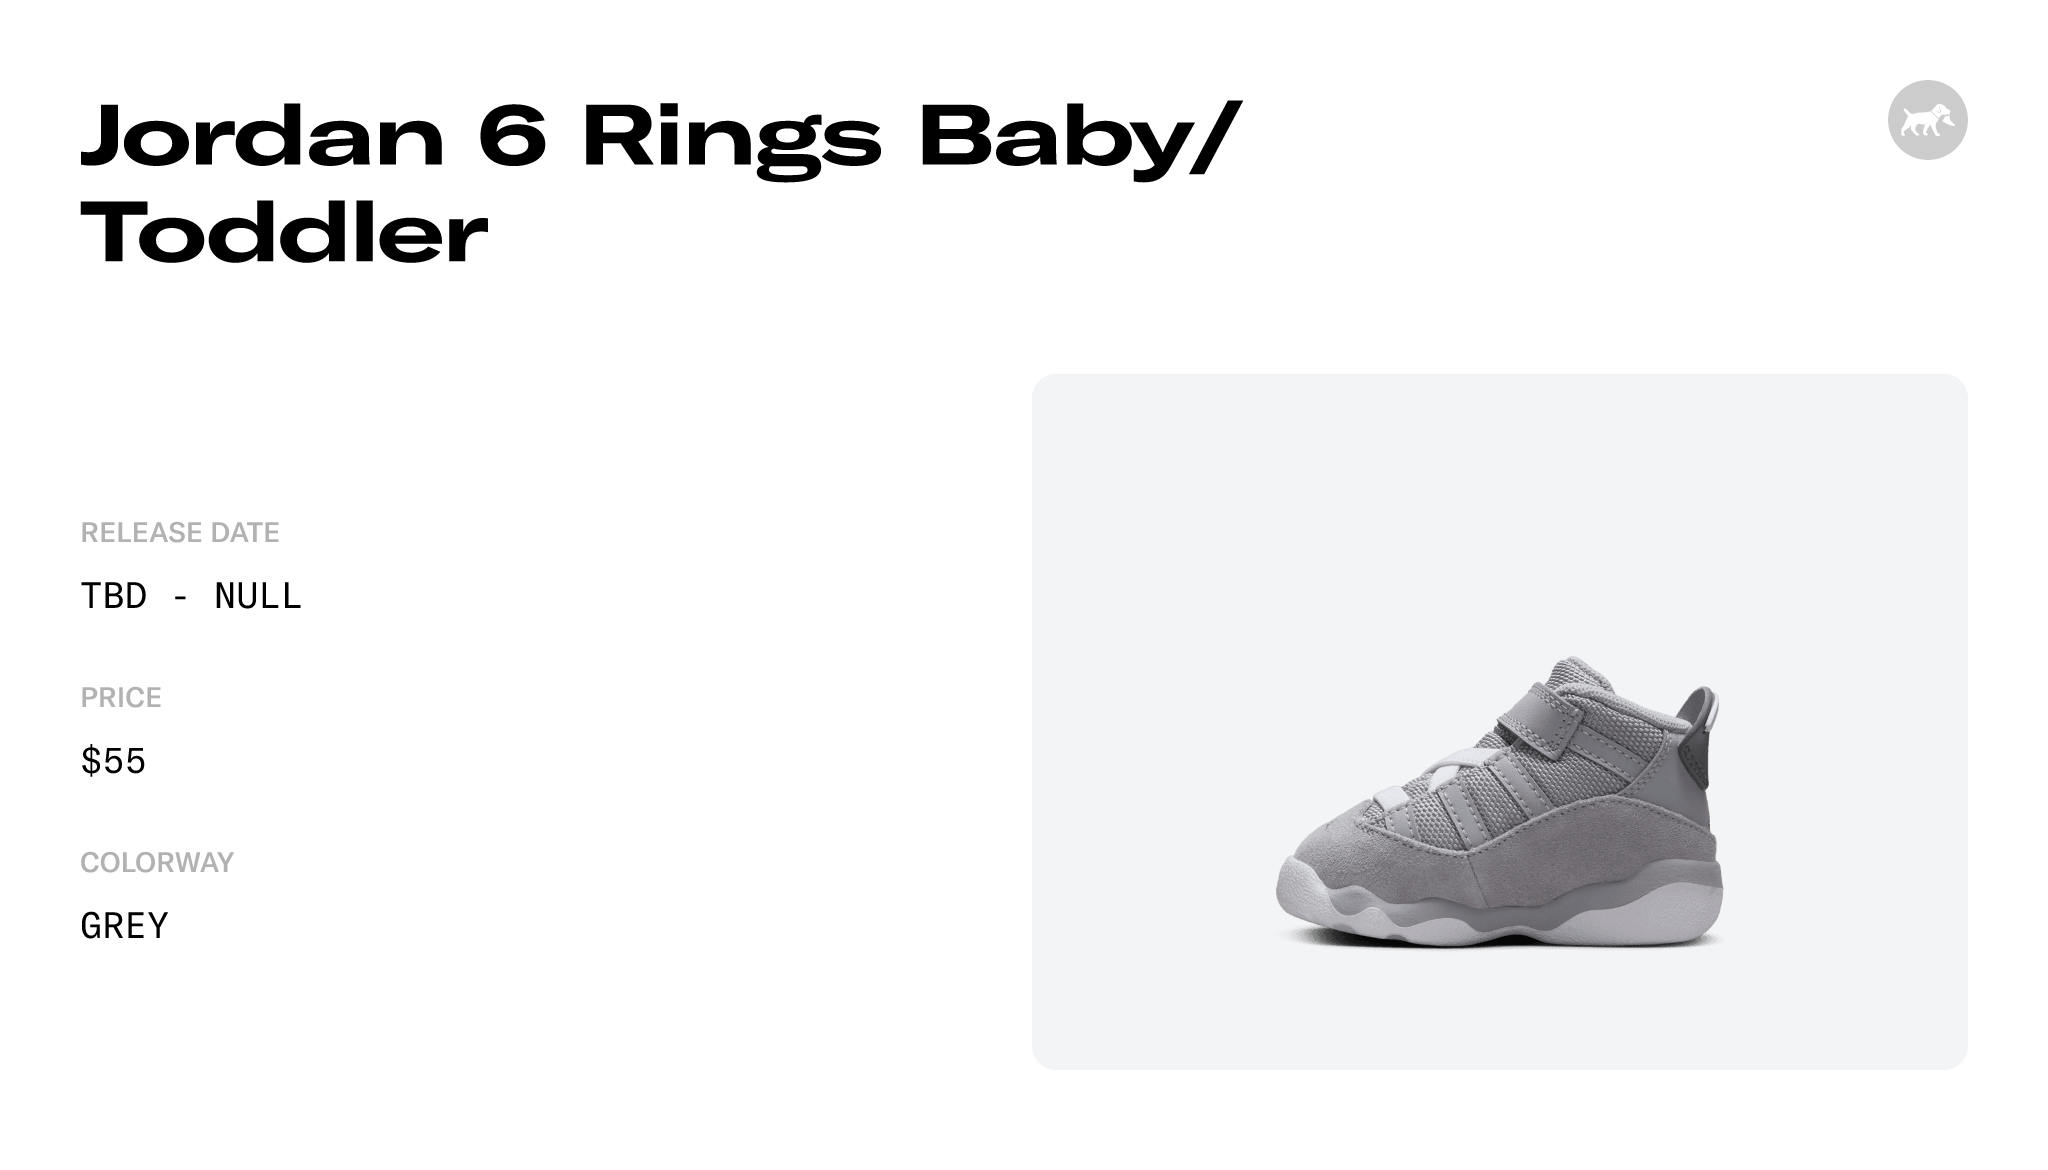 Jordan 6 Rings Baby/Toddler - 323420-009 Raffles and Release Date